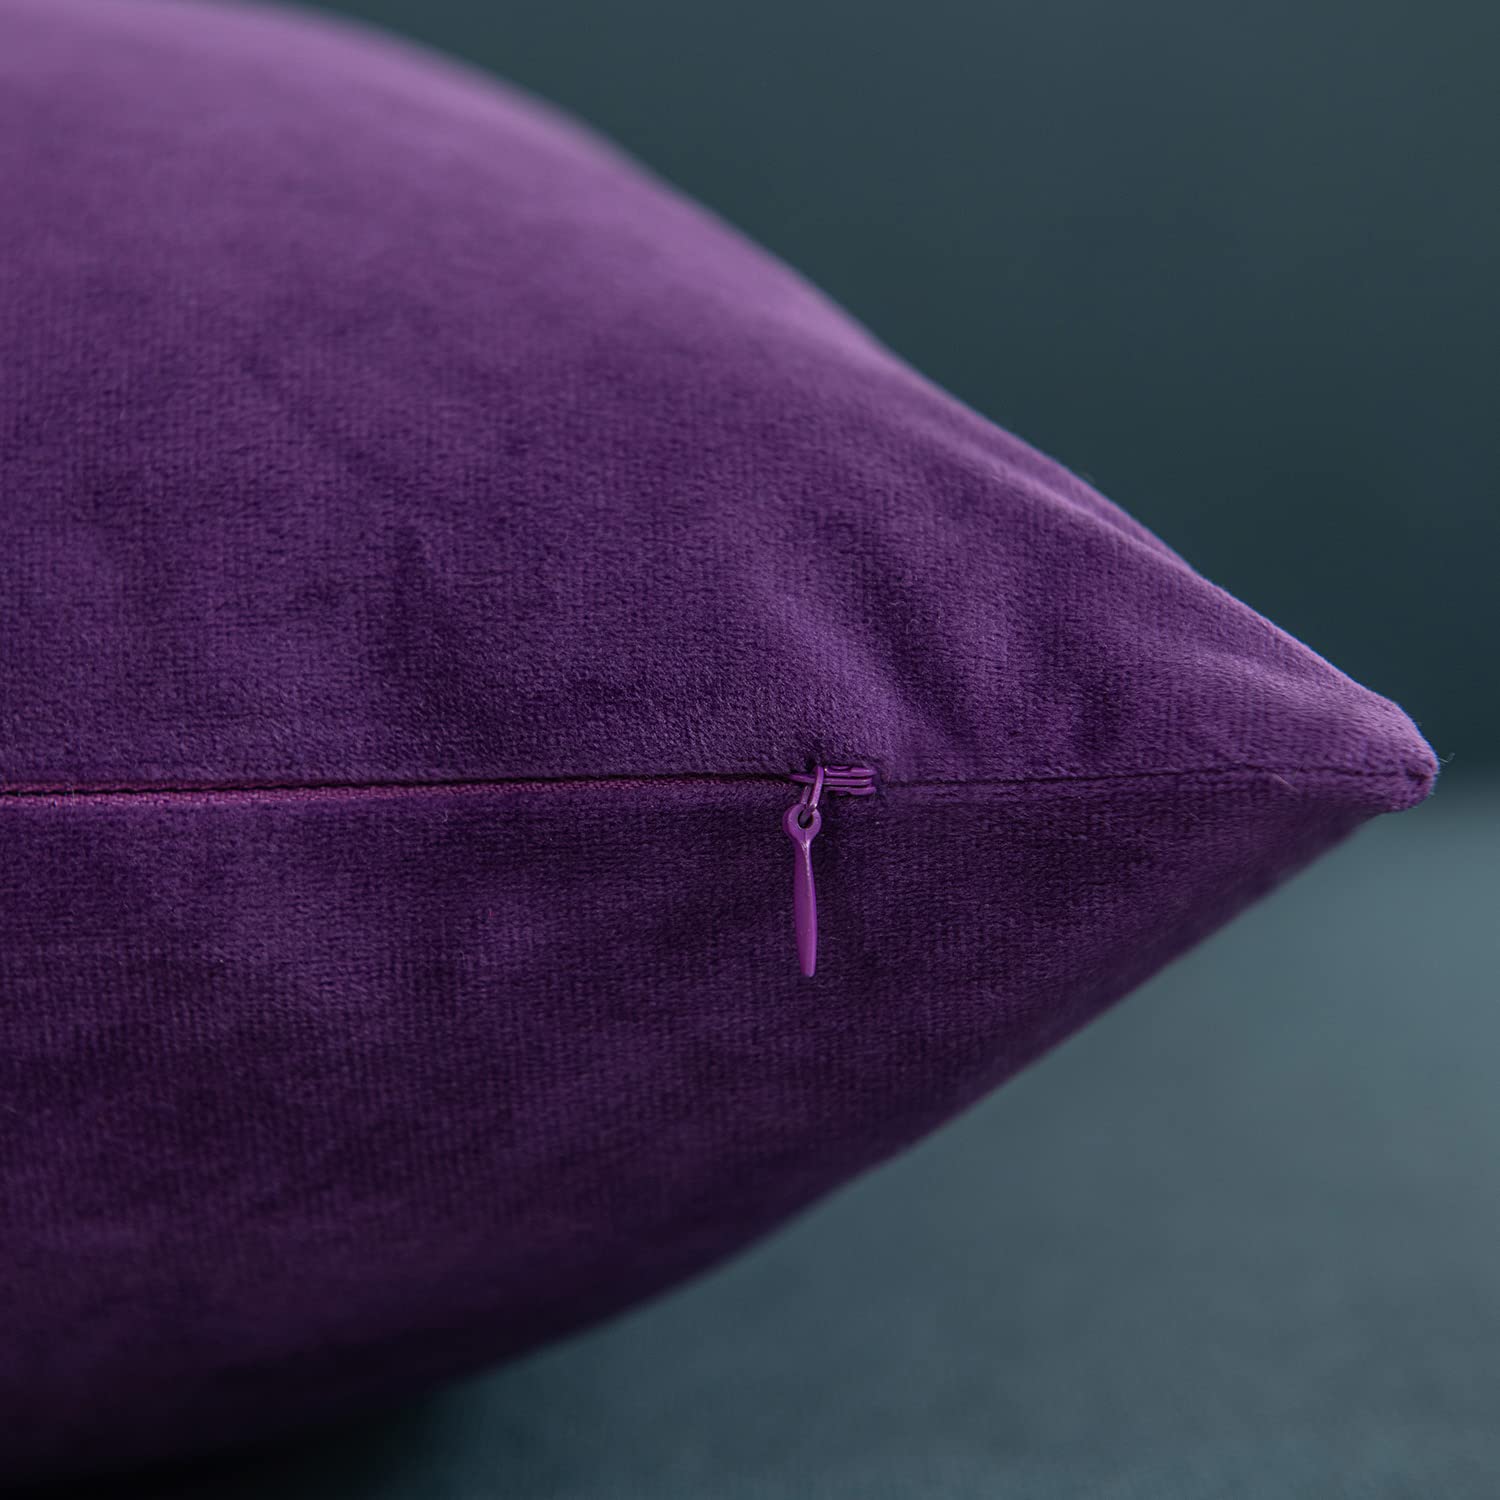 DEZENE 18x18 Throw Pillow Cases Purple: 2 Pack Cozy Soft Velvet Square Decorative Pillow Covers for Farmhouse Home Decor